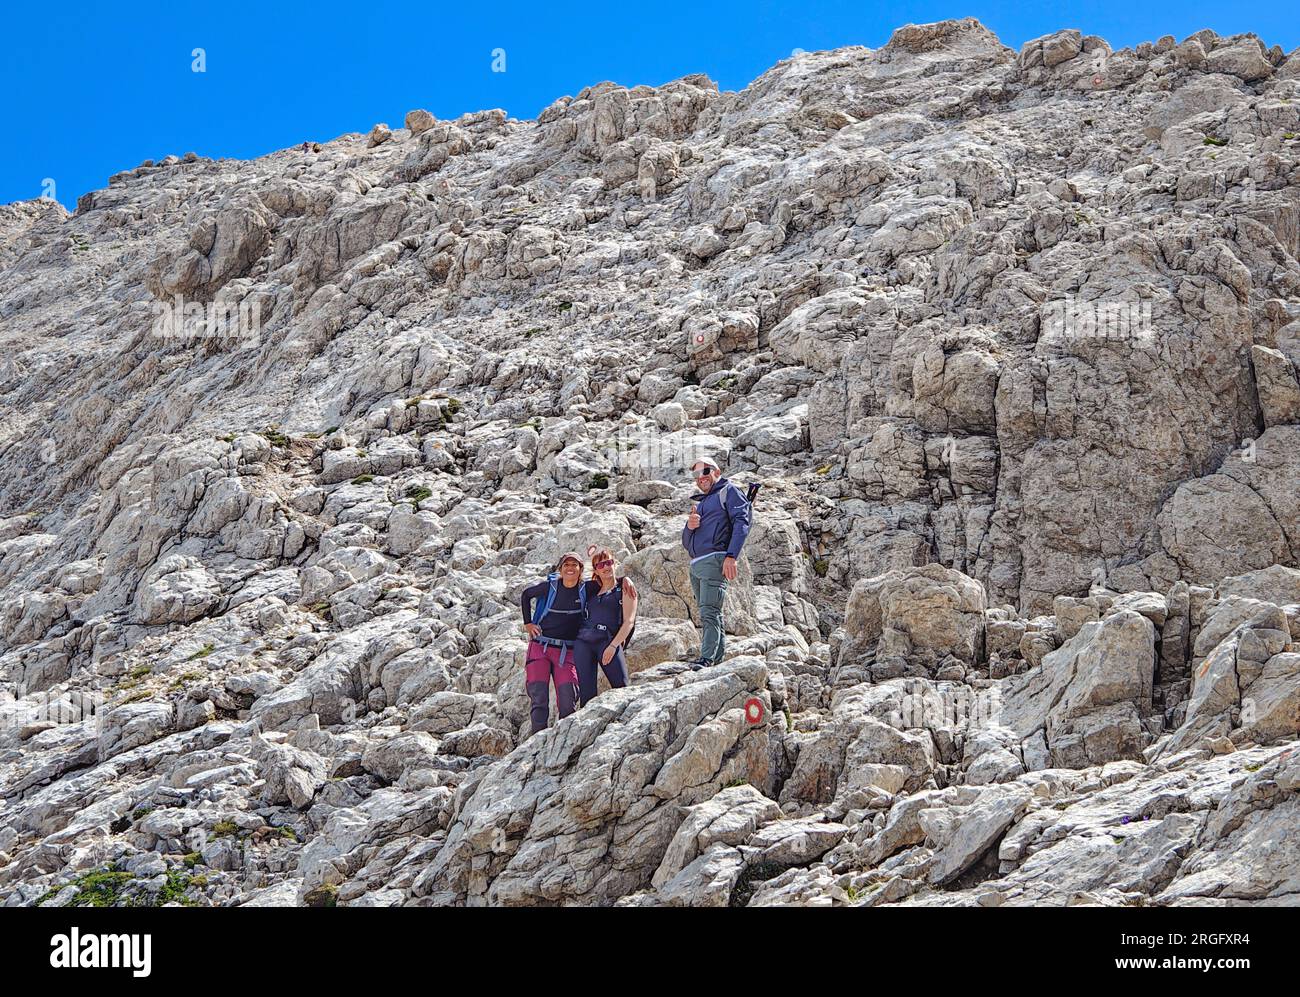 Gran Sasso, Italie - la voie alpiniste à Vetta Occidentale de Corno Grande, à 2912 mètres dans la région des Abruzzes, nommée via delle Creste ou Cresta Ovest. Banque D'Images